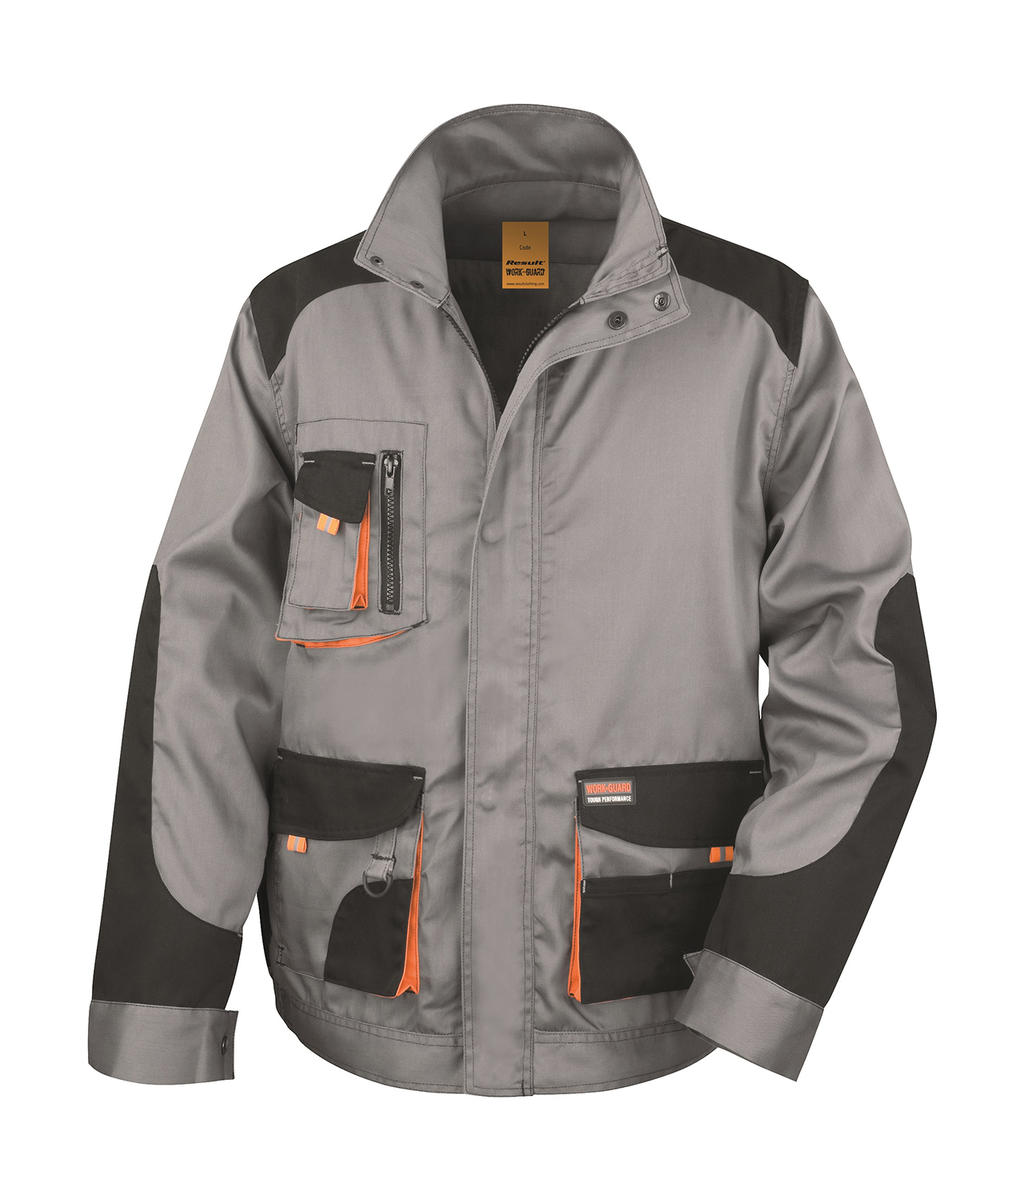  LITE Jacket in Farbe Grey/Black/Orange